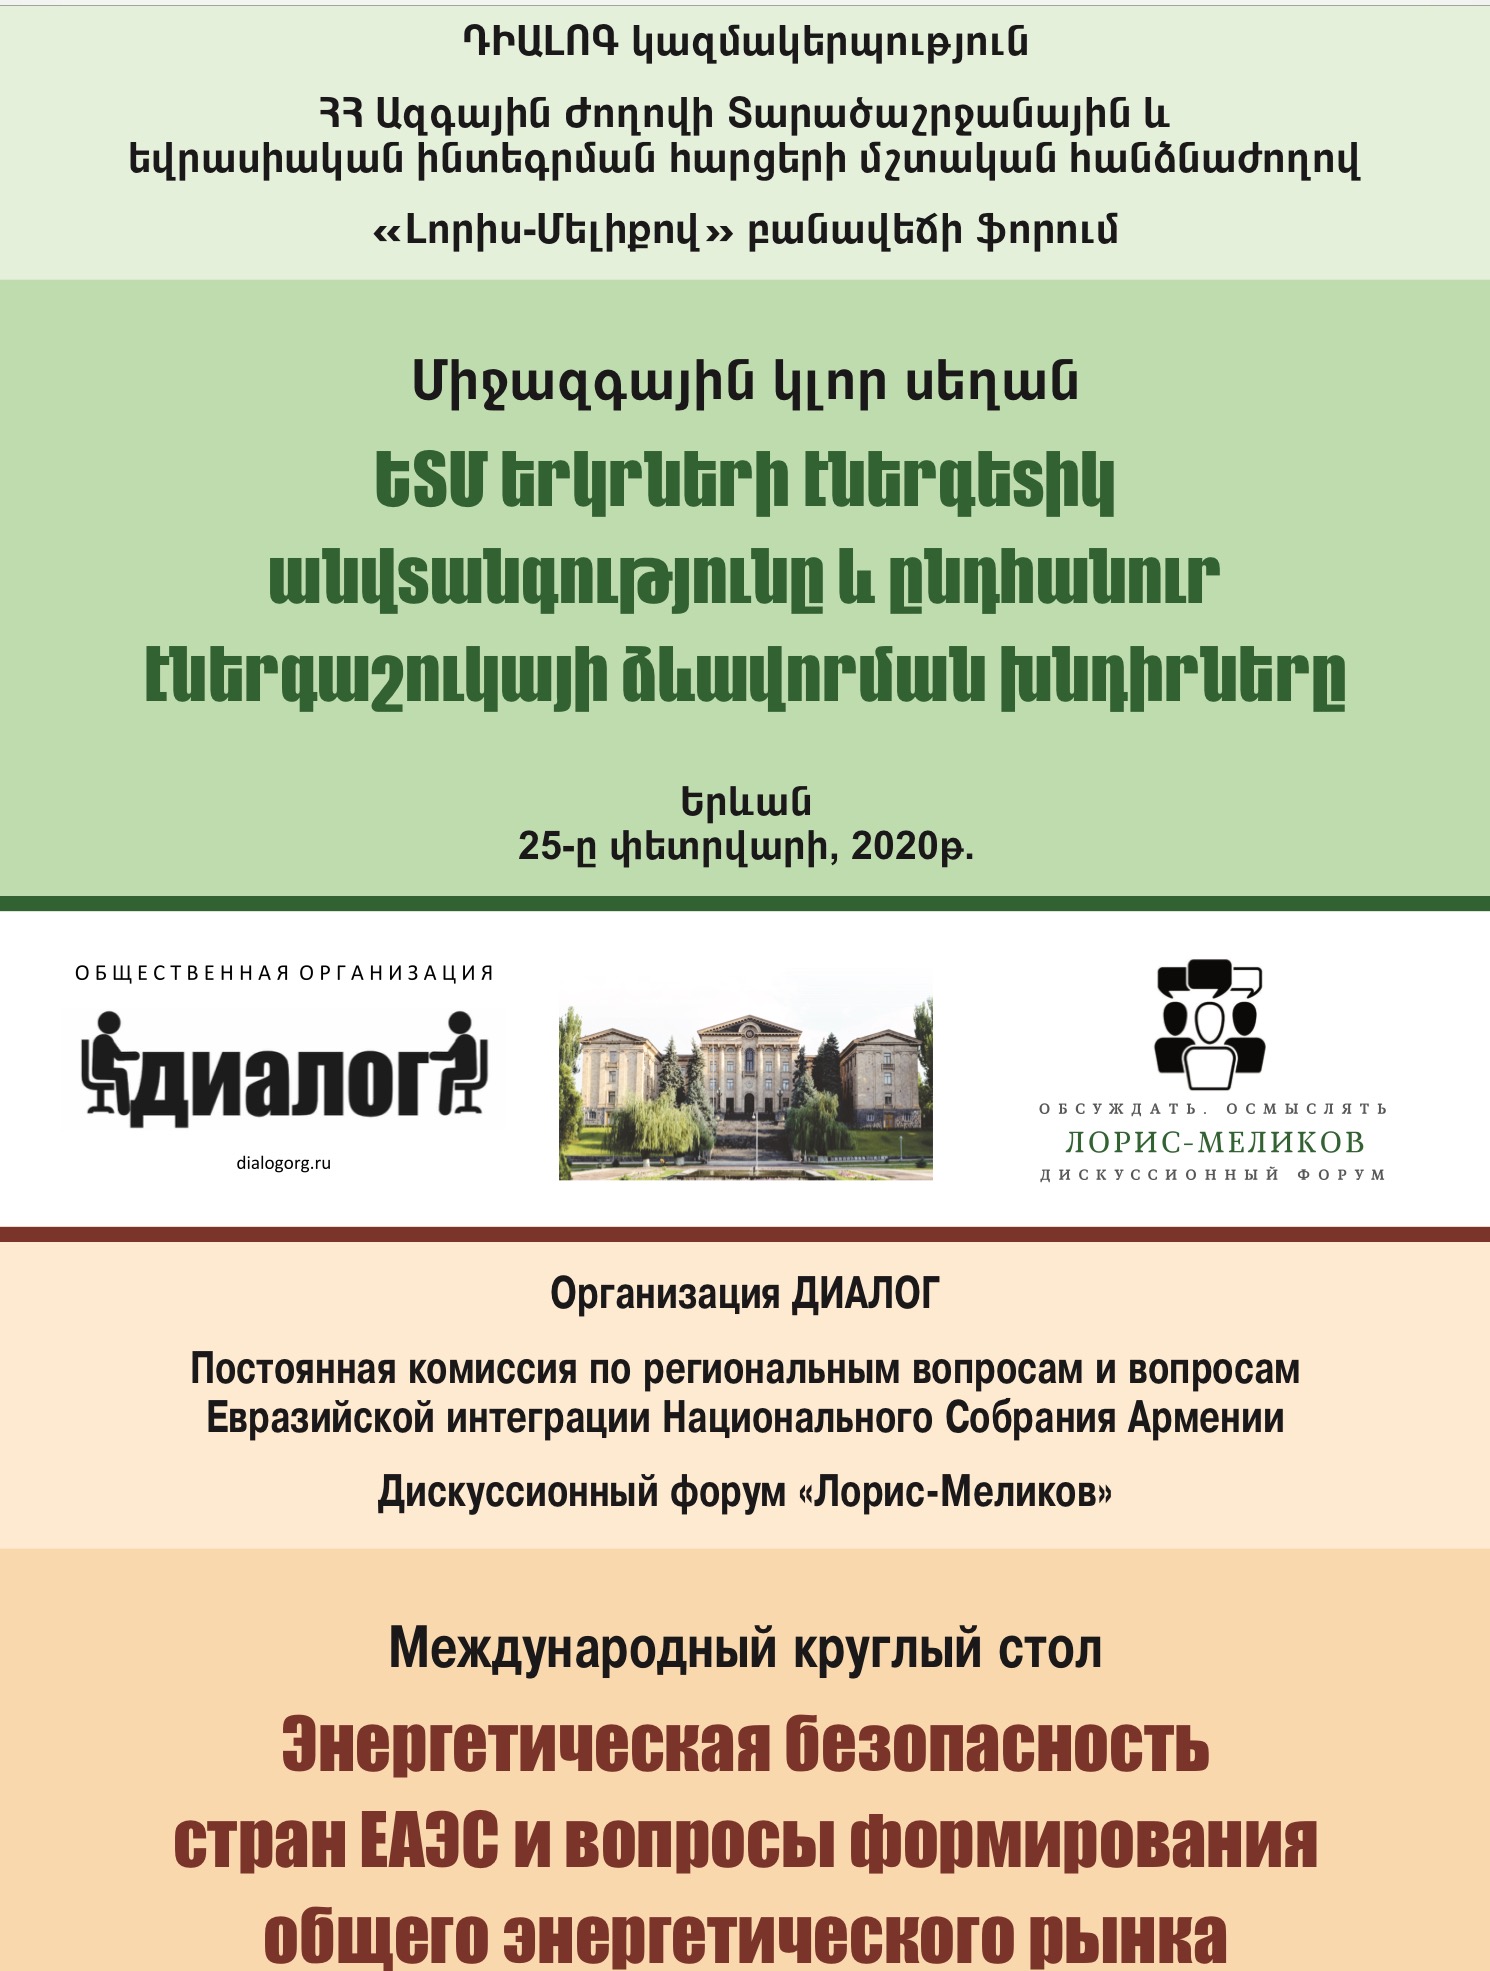 Международный круглый стол «Энергетическая безопасность стран ЕАЭС и вопросы формирования общего энергетического рынка» пройдет в Ереване 